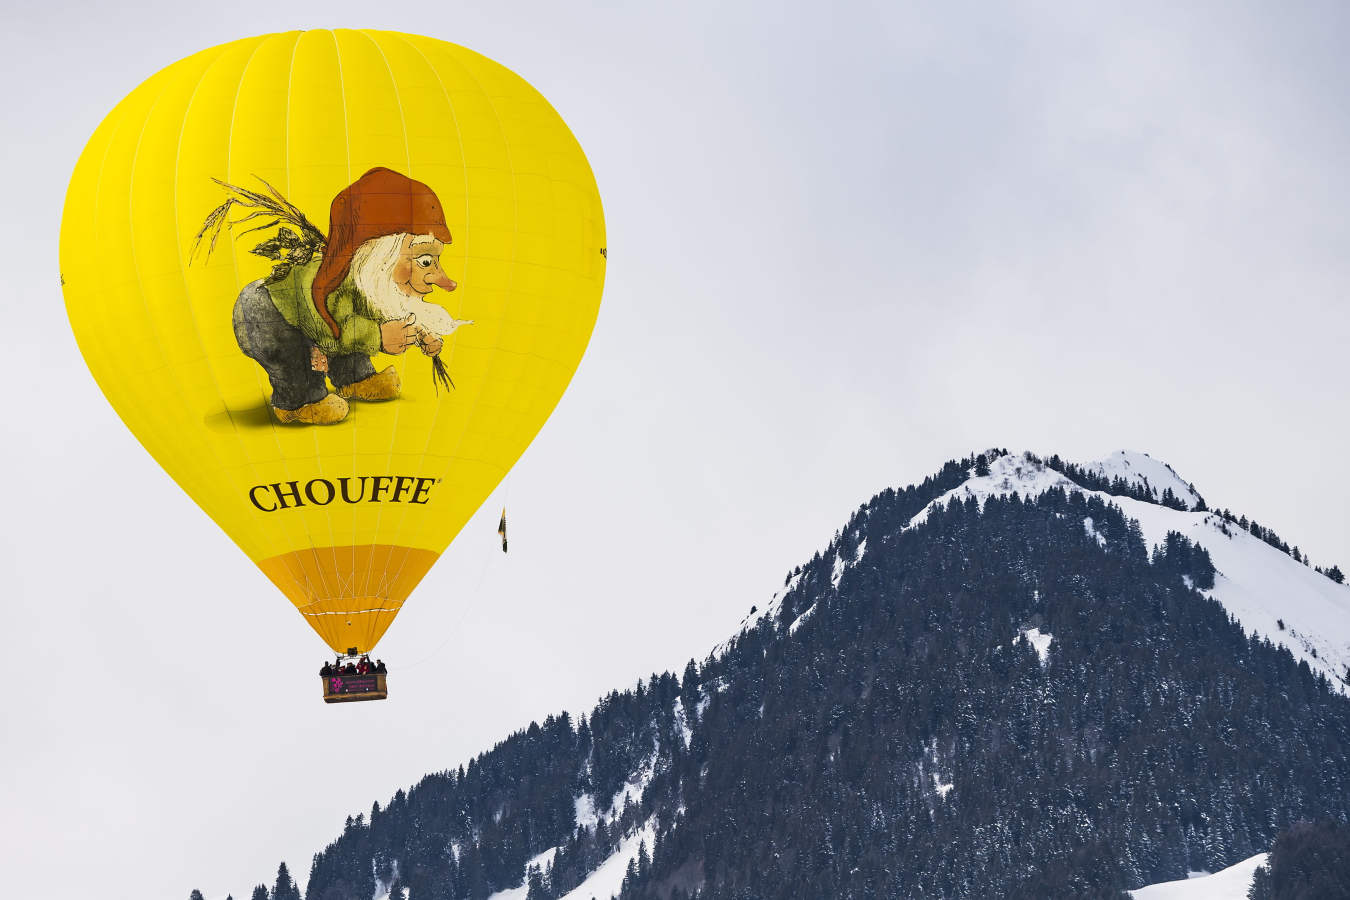 Globos aerostáticos durante el 41º Festival Internacional de Globos Aerostáticos que se está celebrando en la estación de esquí de Chateau d'Oex, en los Alpes suizos. Setenta globos de quince países participan en el evento.